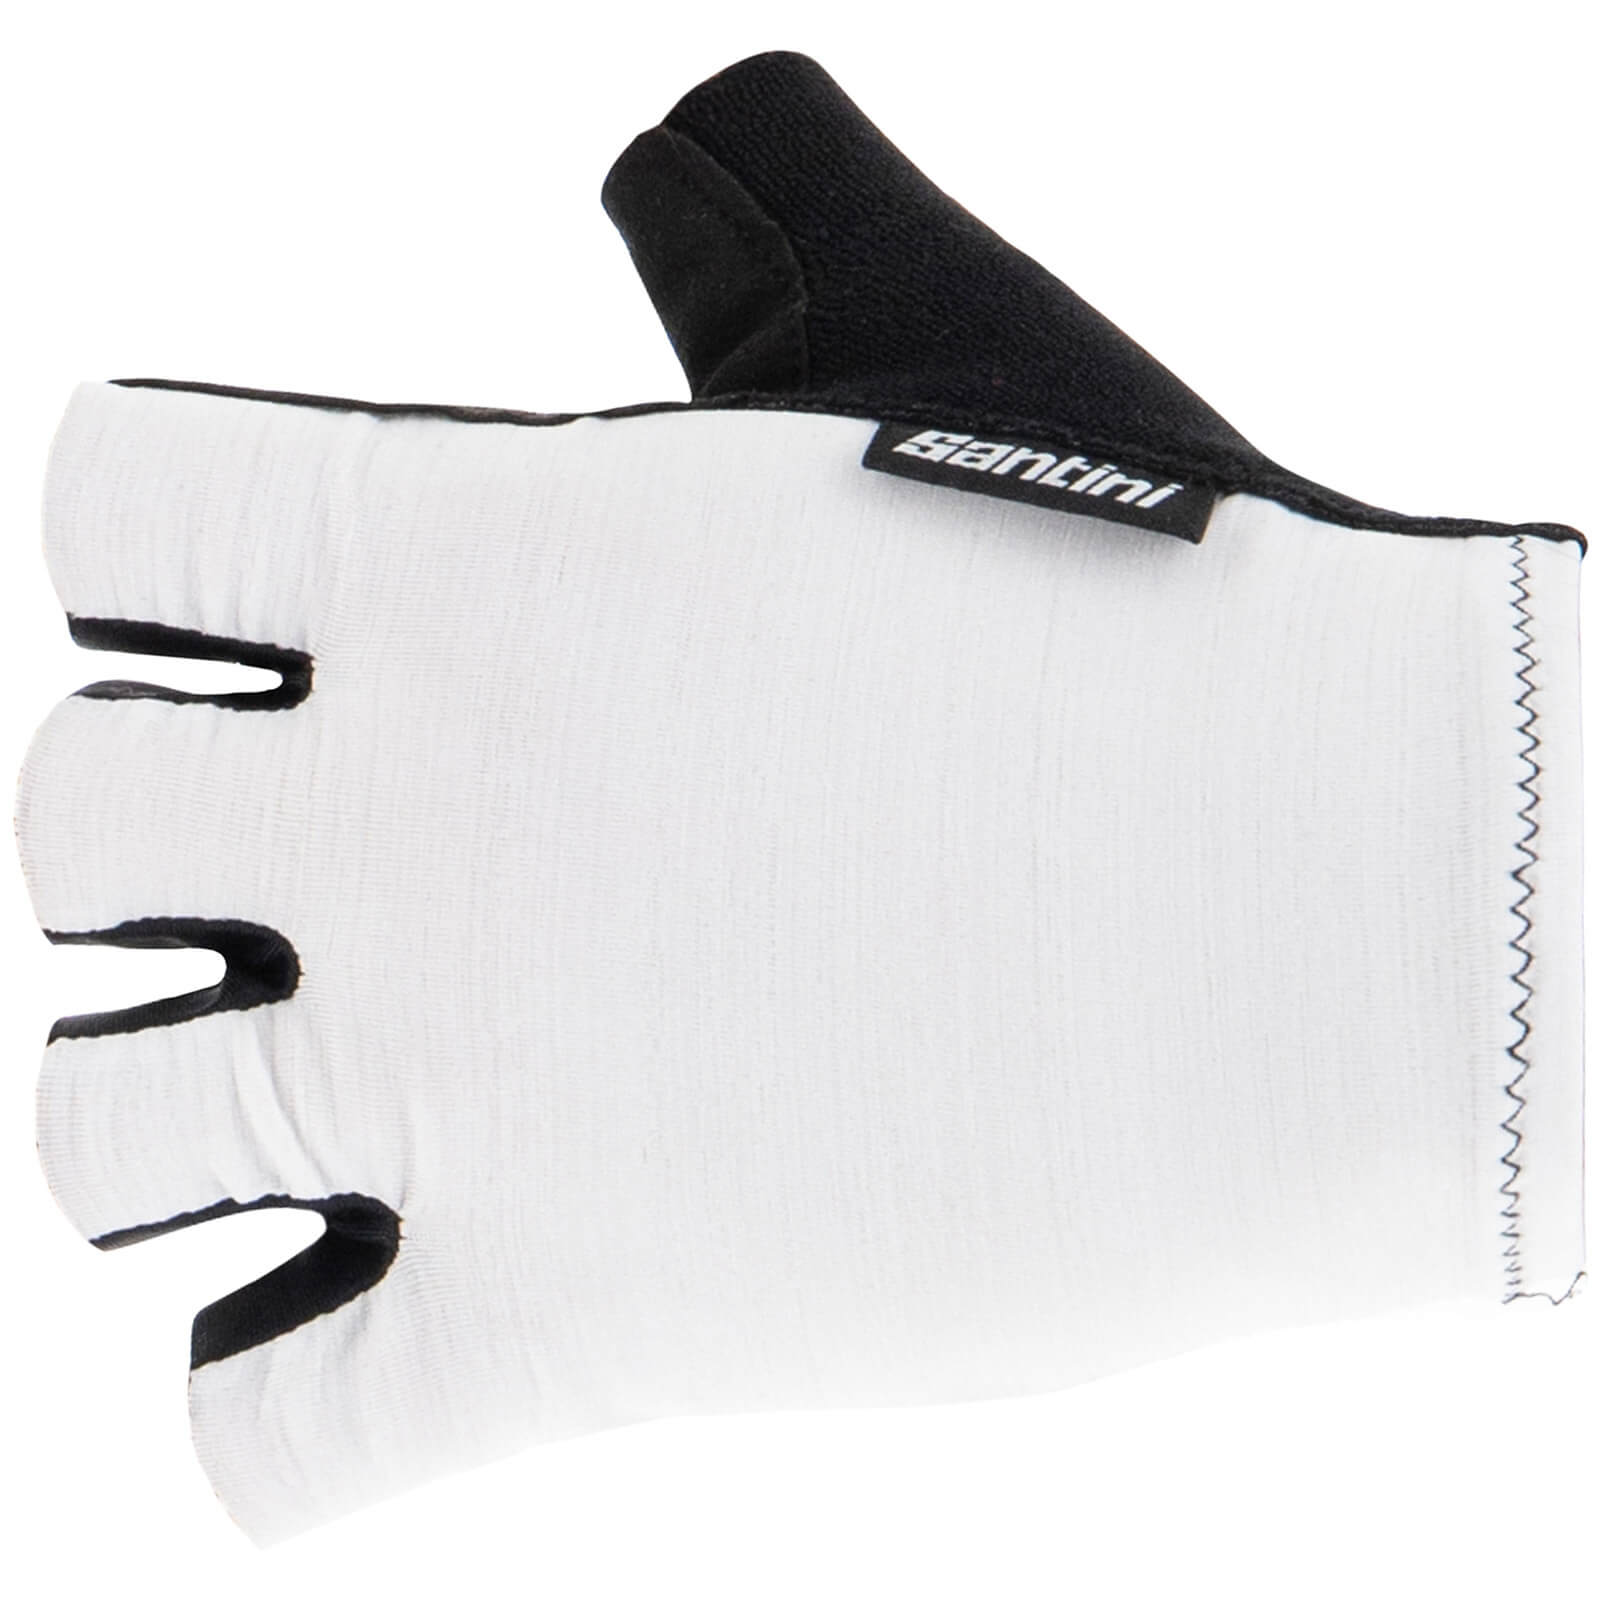 Santini Cubo Gloves - S - White